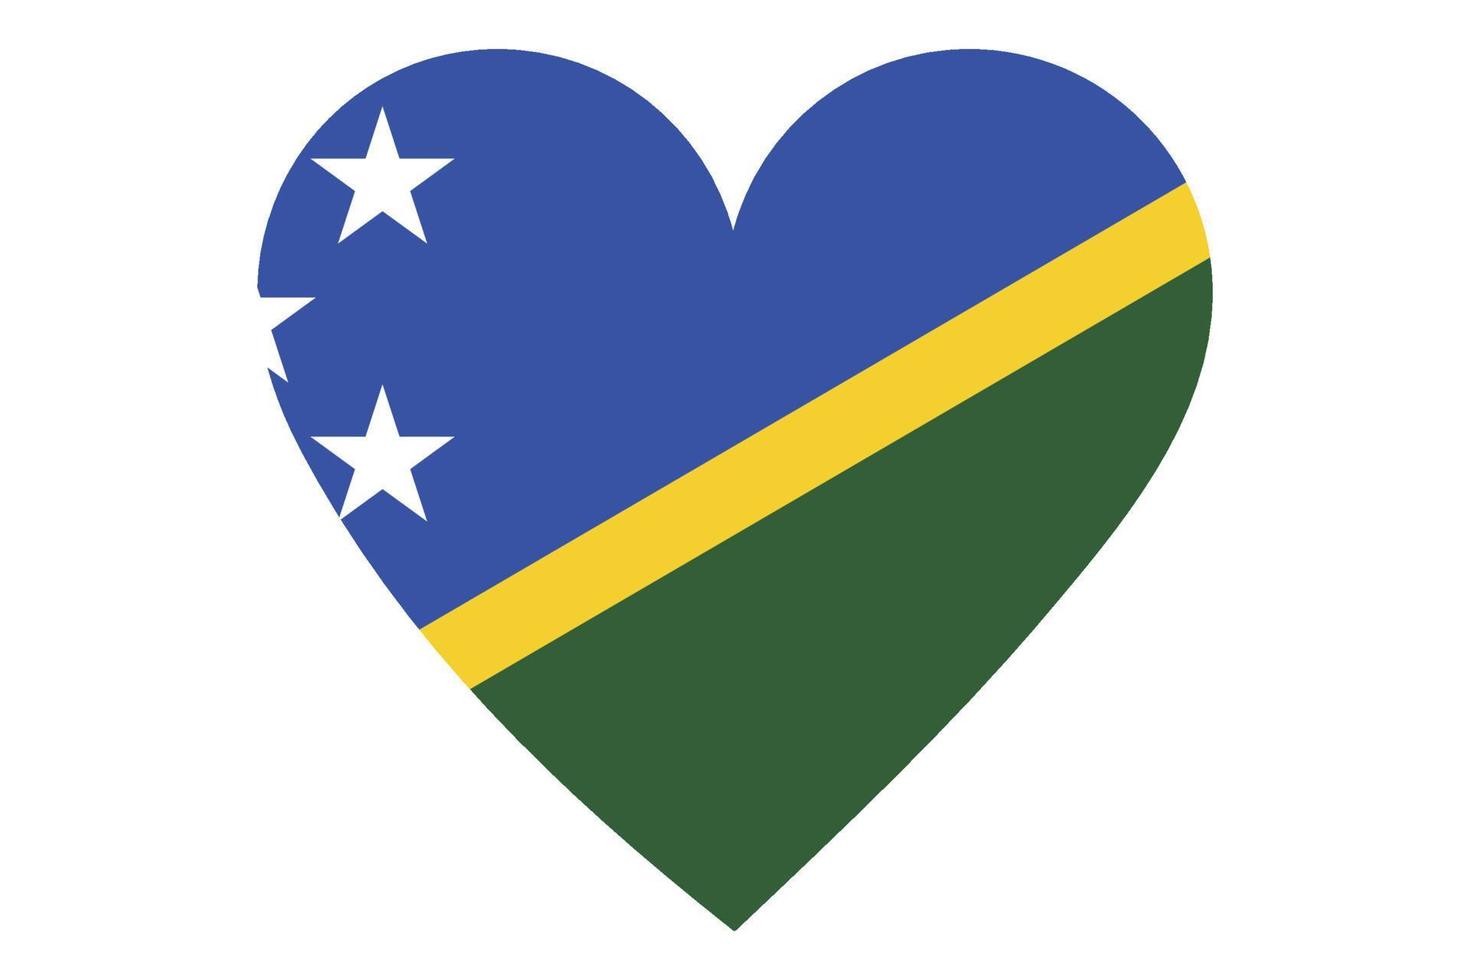 Heart flag vector of Solomon Islands on white background.